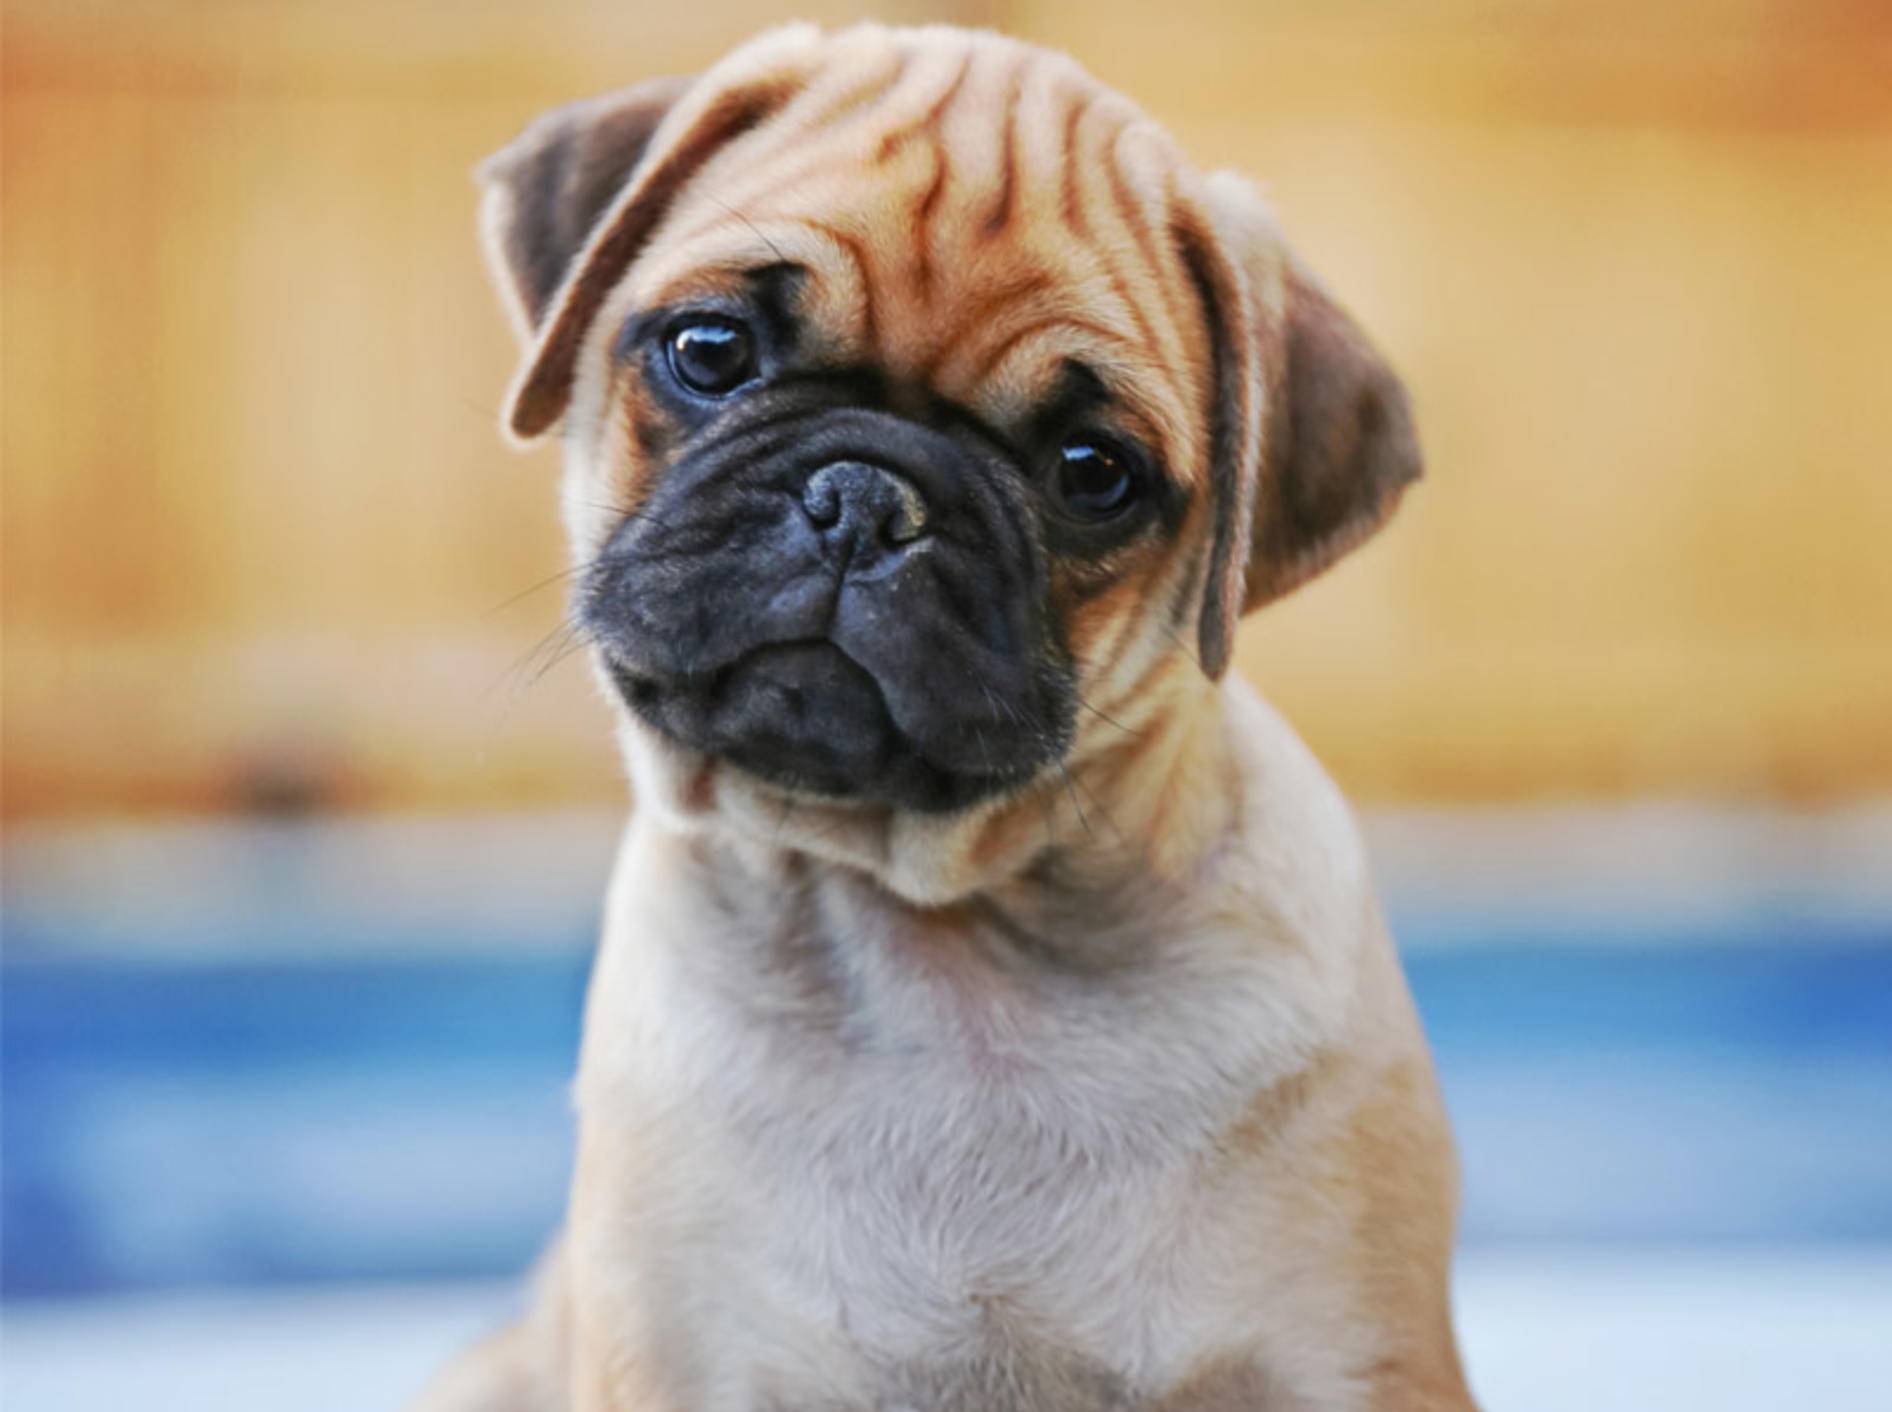 Ist der Dackelblick bei Hund das Ergebnis der Evolution? - Bild: Shutterstock / Annette Shaff